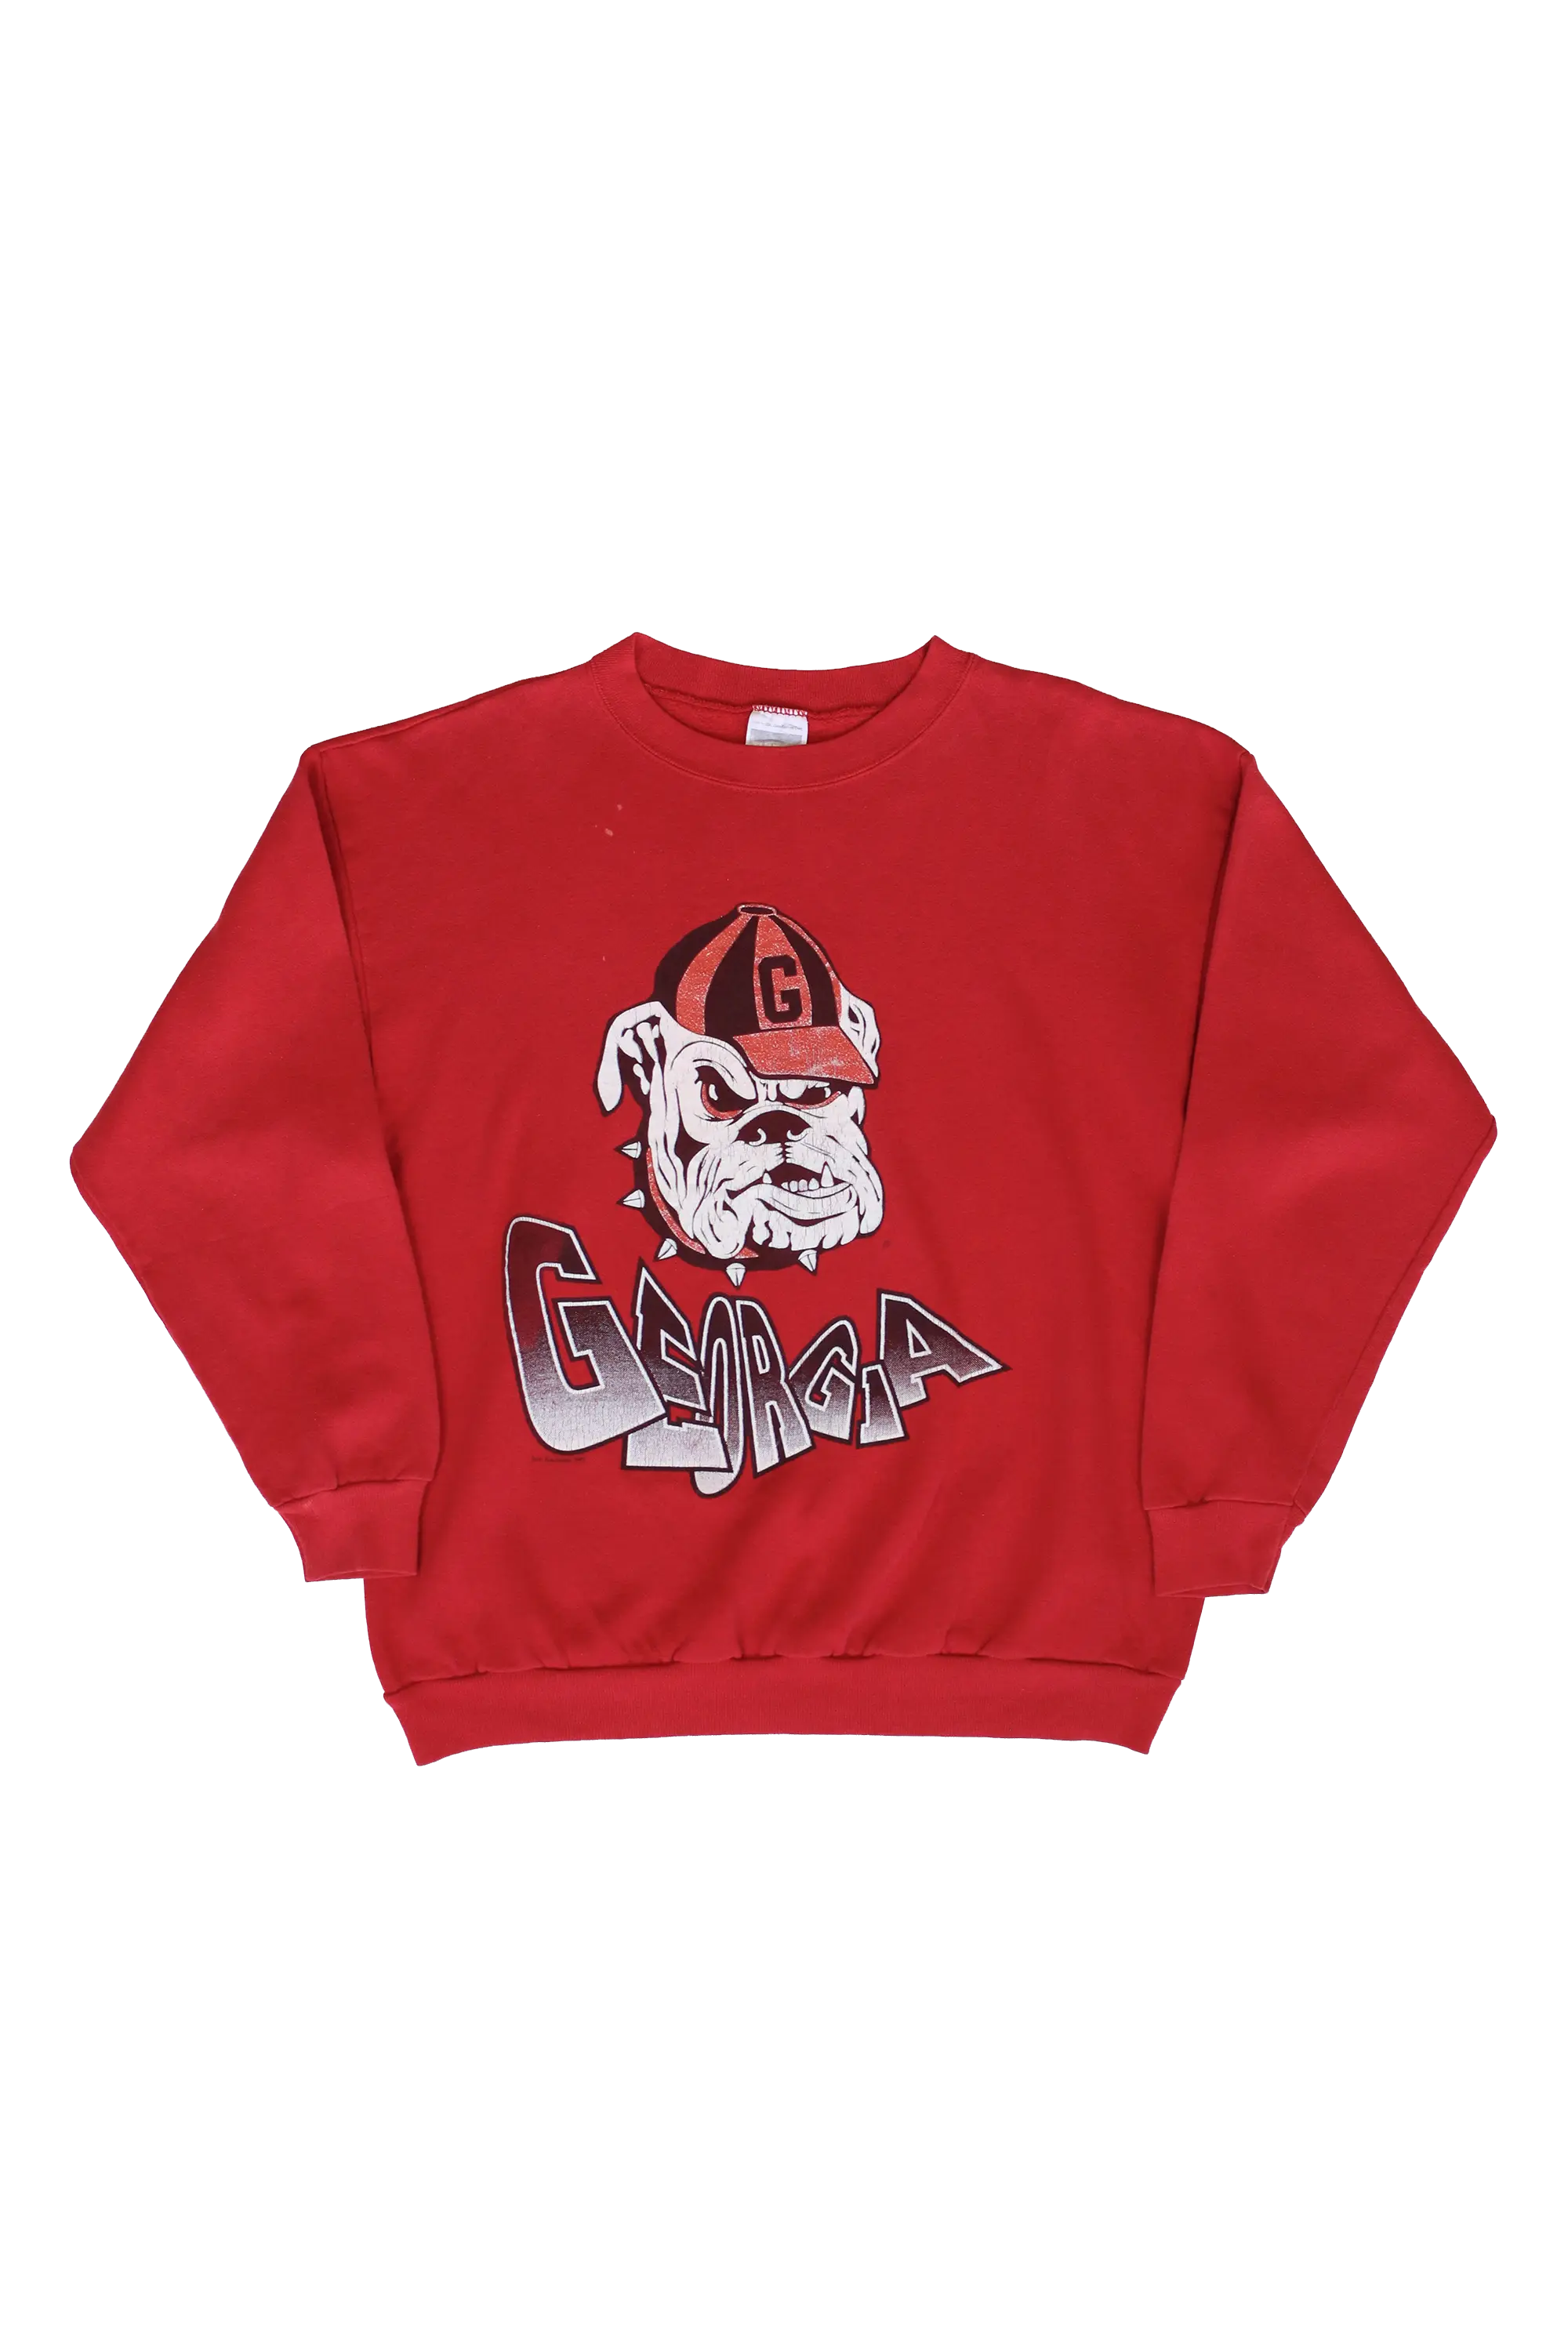 Georgia Bulldogs Sweater